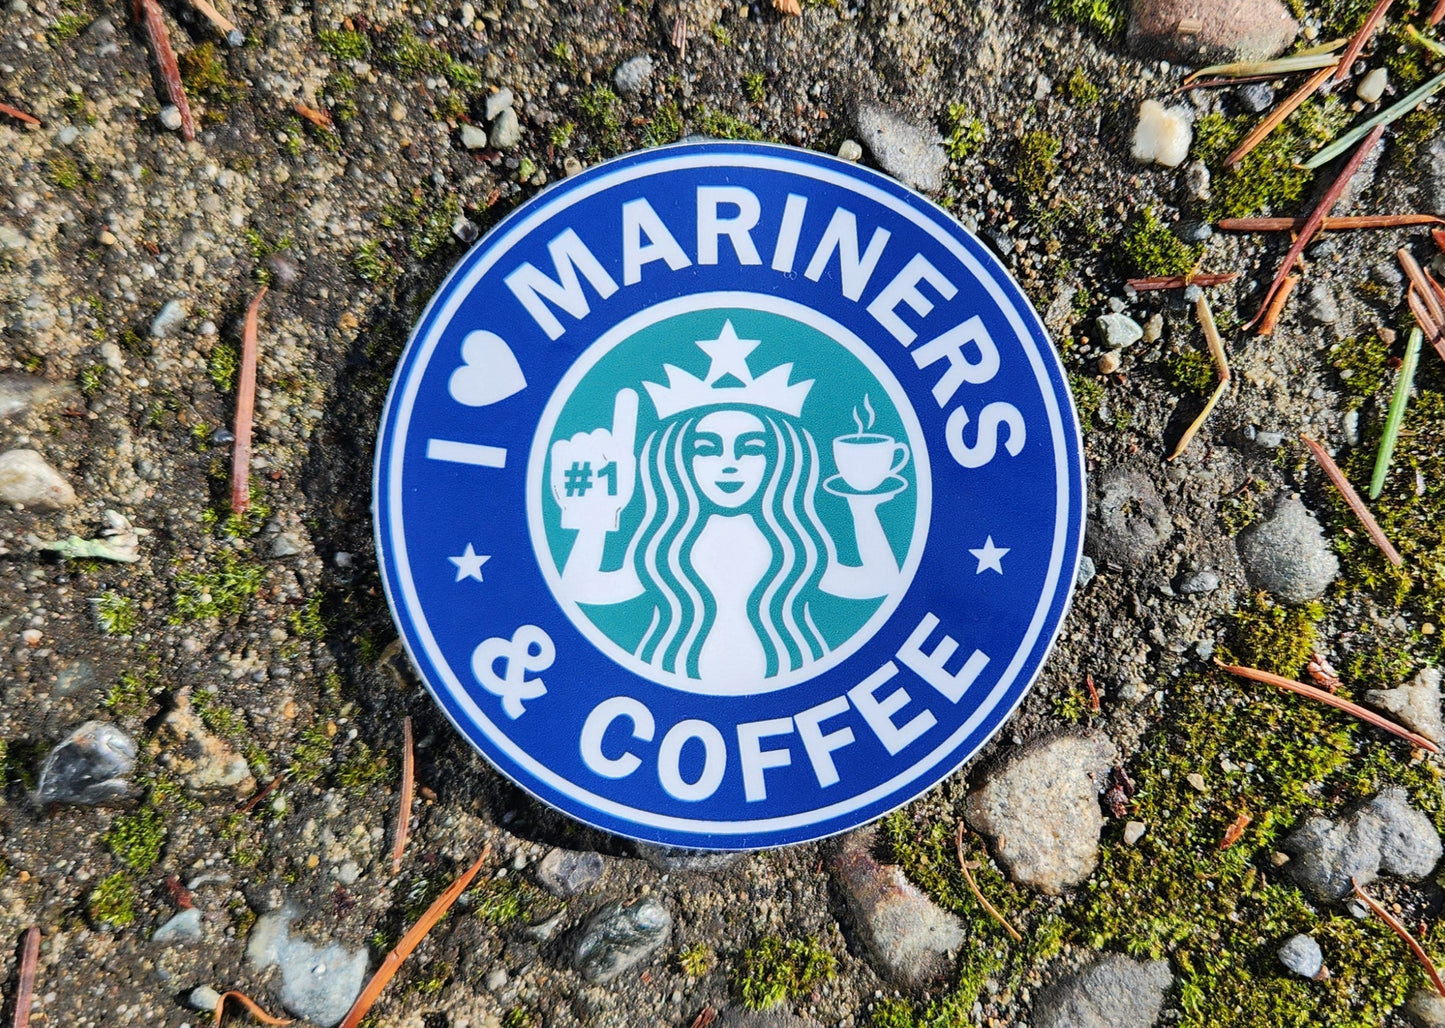 Mariners & Coffee